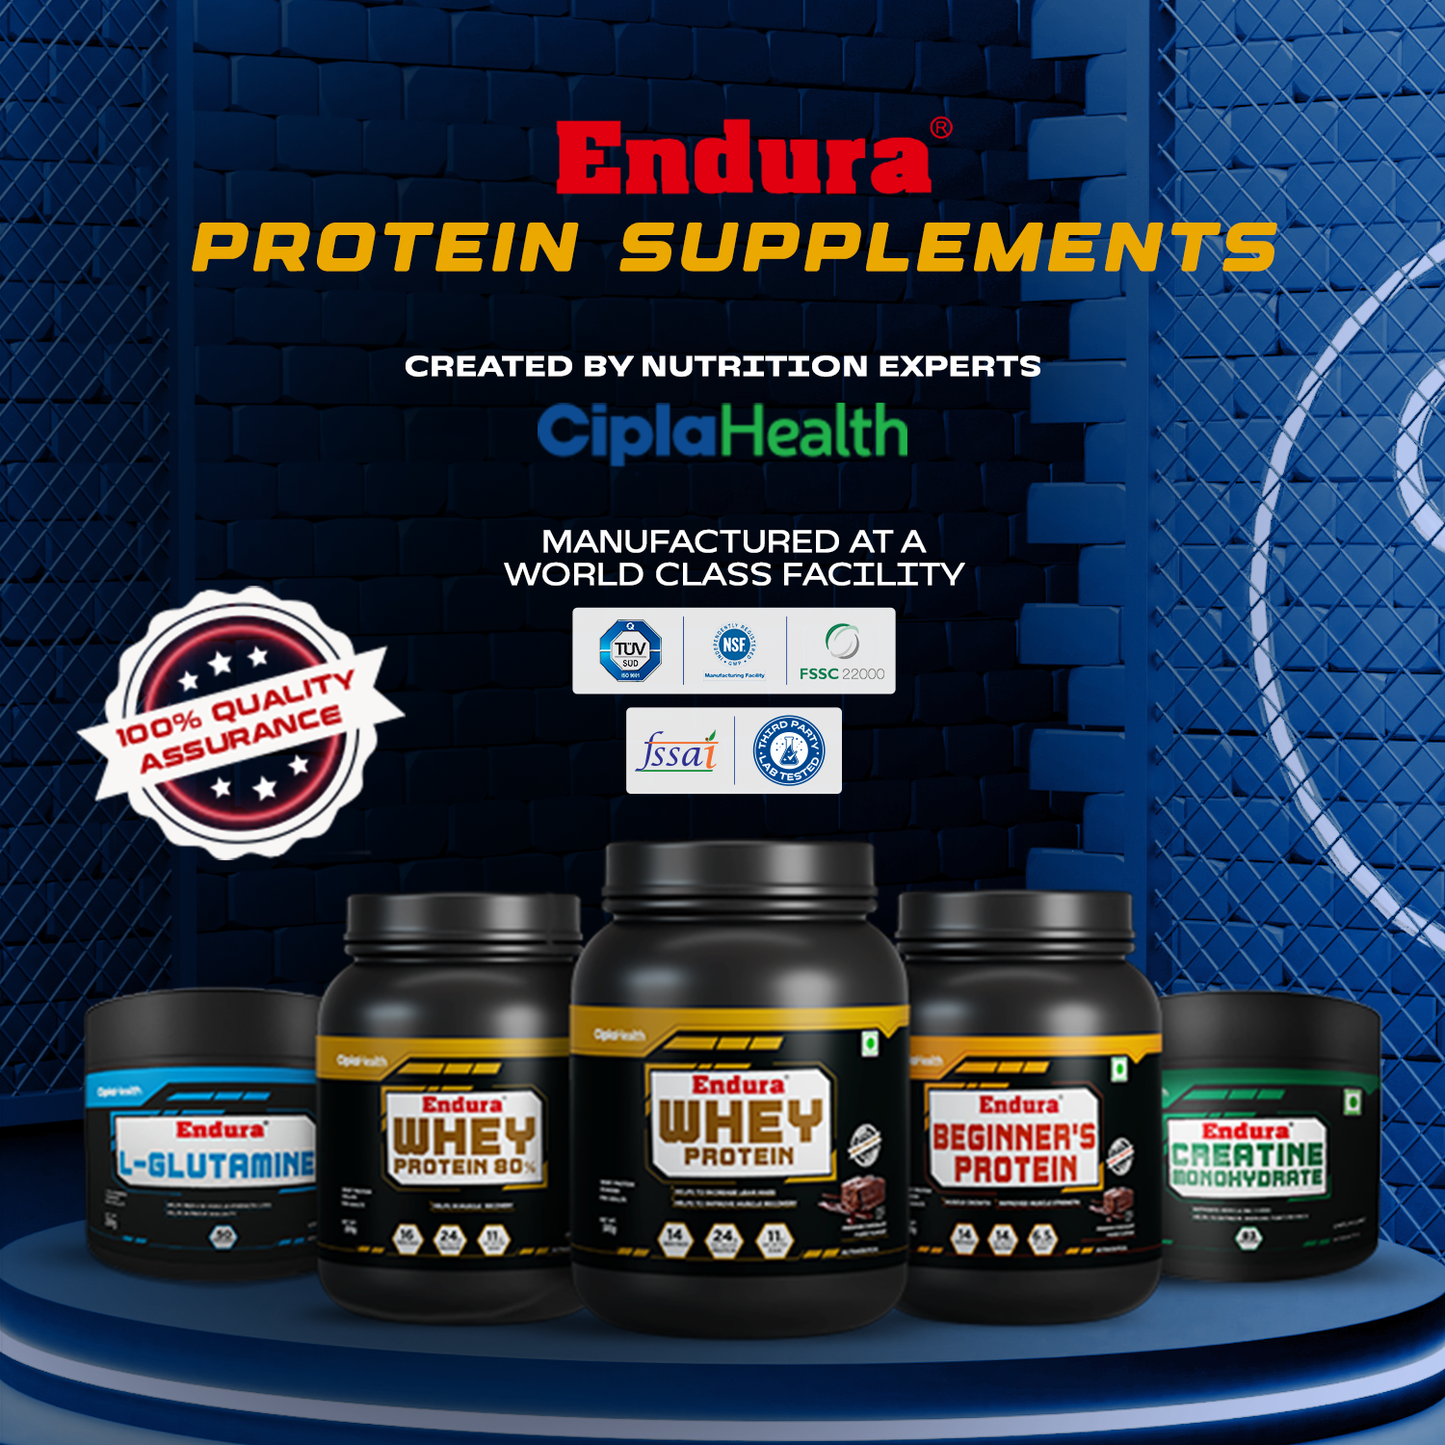 Endura Whey Protein 80% RAW Whey